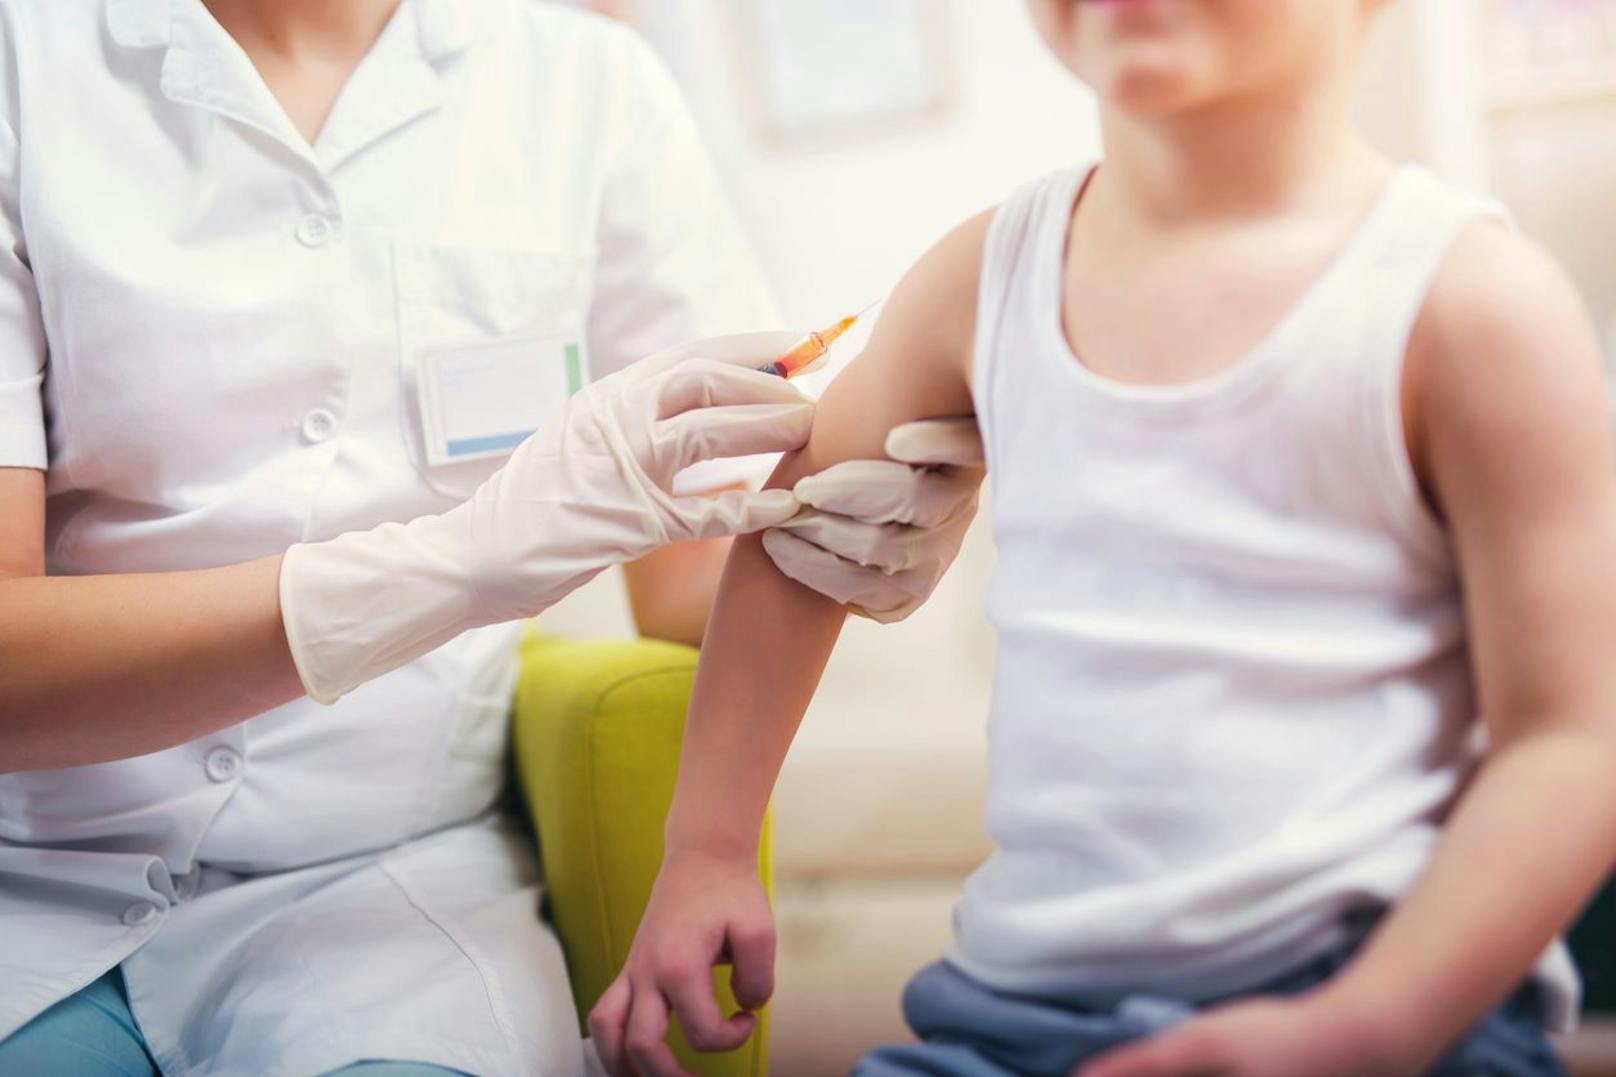 Vertrauen in Kinder-Impfungen während Pandemie gesunken